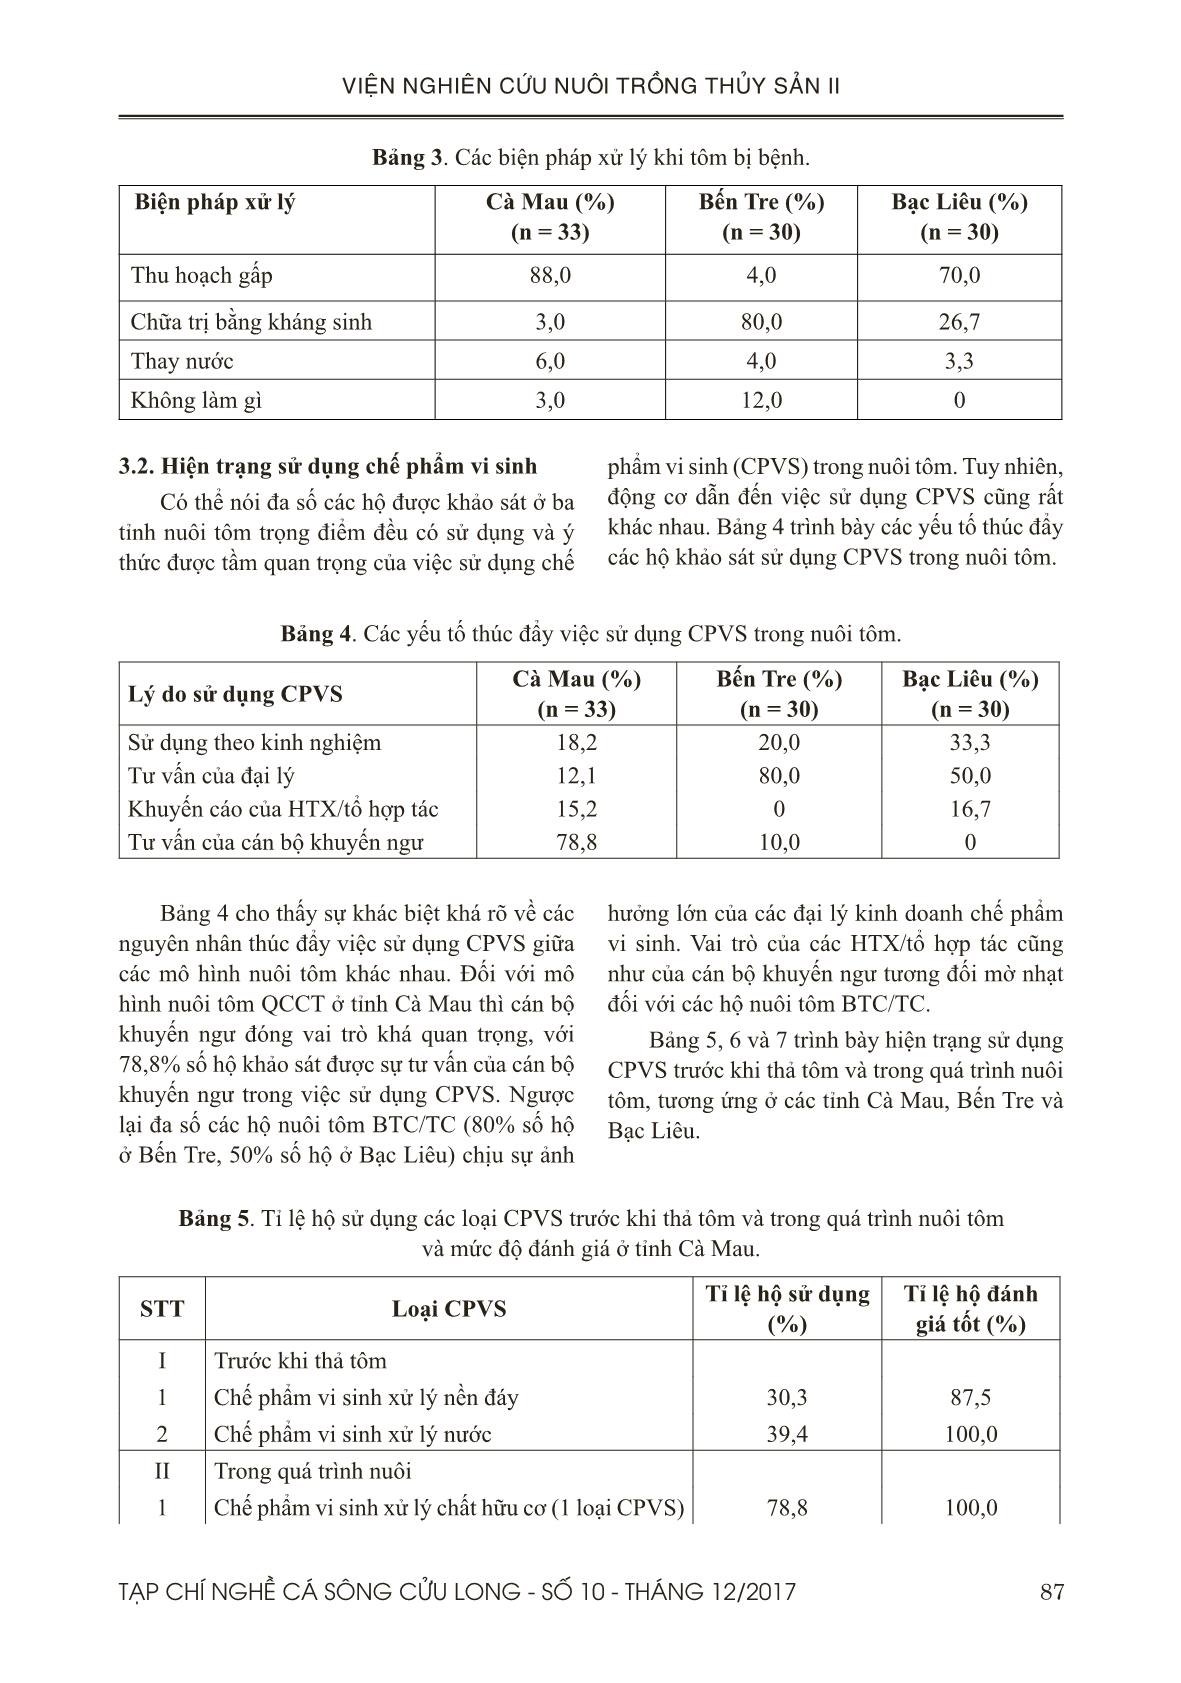 Đánh giá tình hình sử dụng chế phẩm vi sinh trong nuôi tôm ở đồng bằng sông Cửu Long trang 5